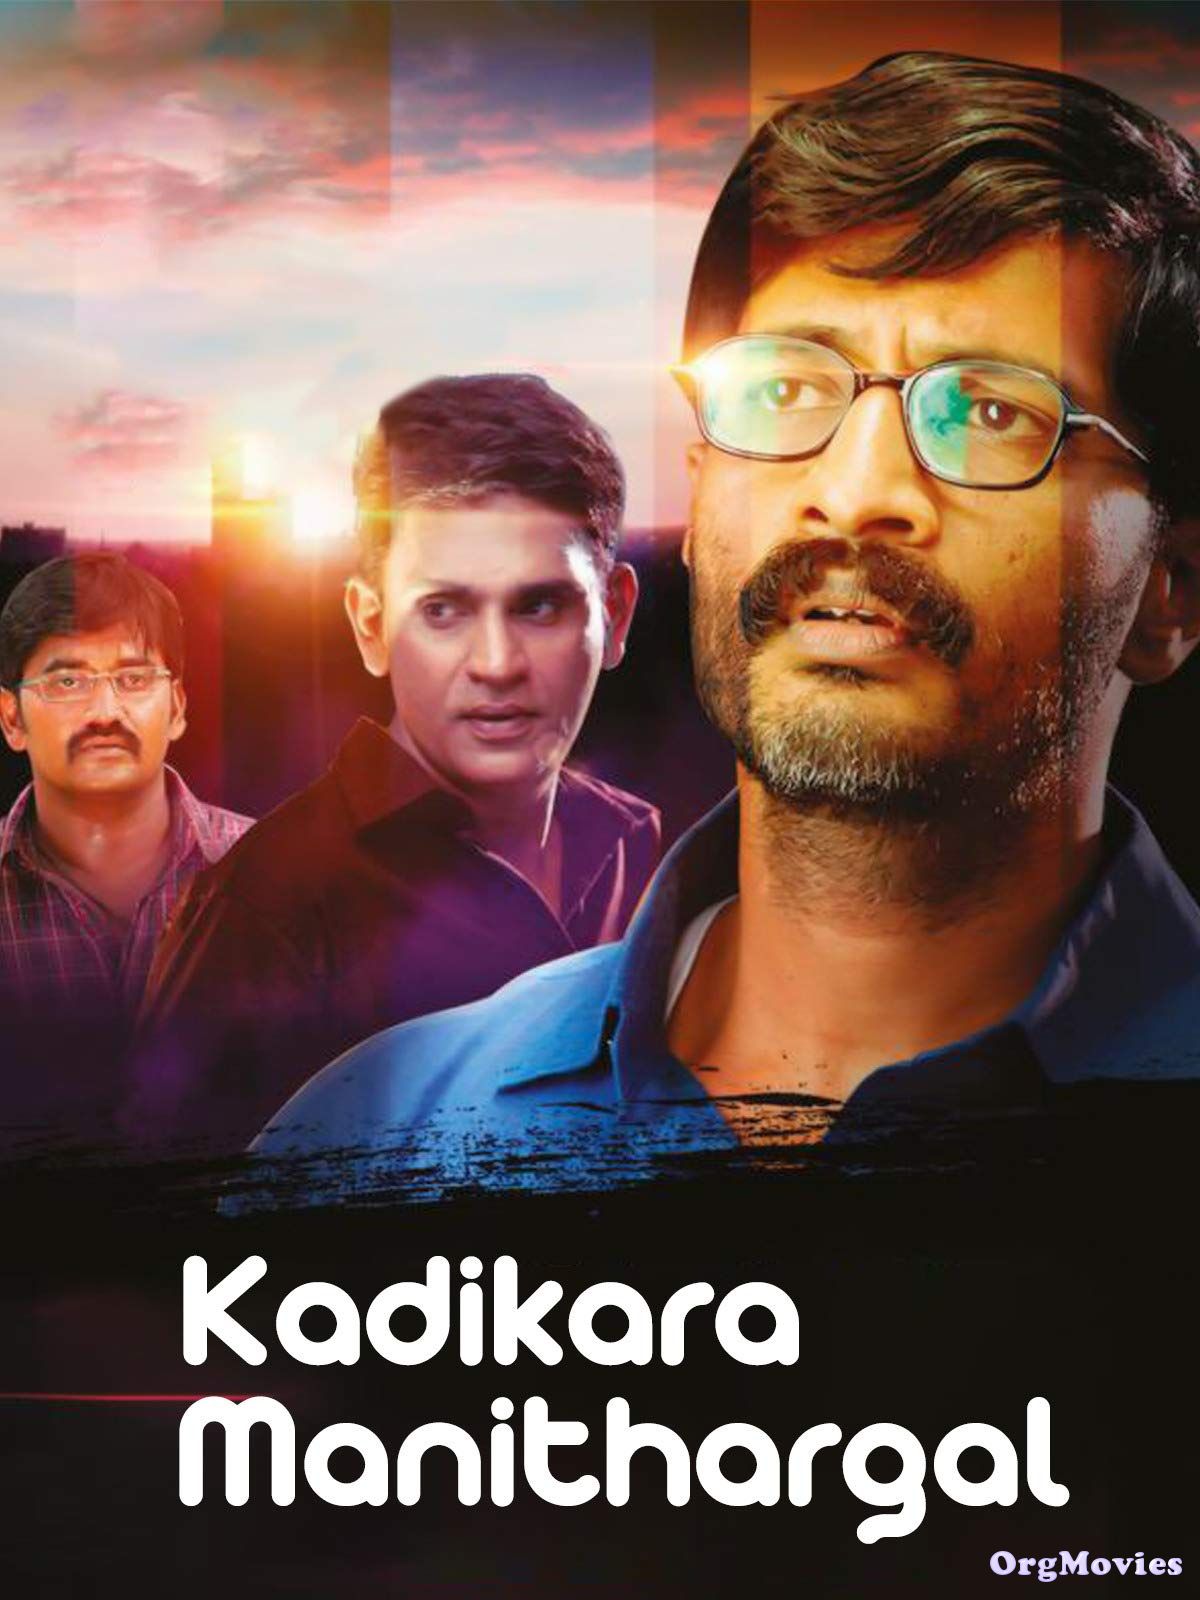 Kadikara Manithargal (Ghosla) 2018 Hindi Dubbed Full Movie download full movie